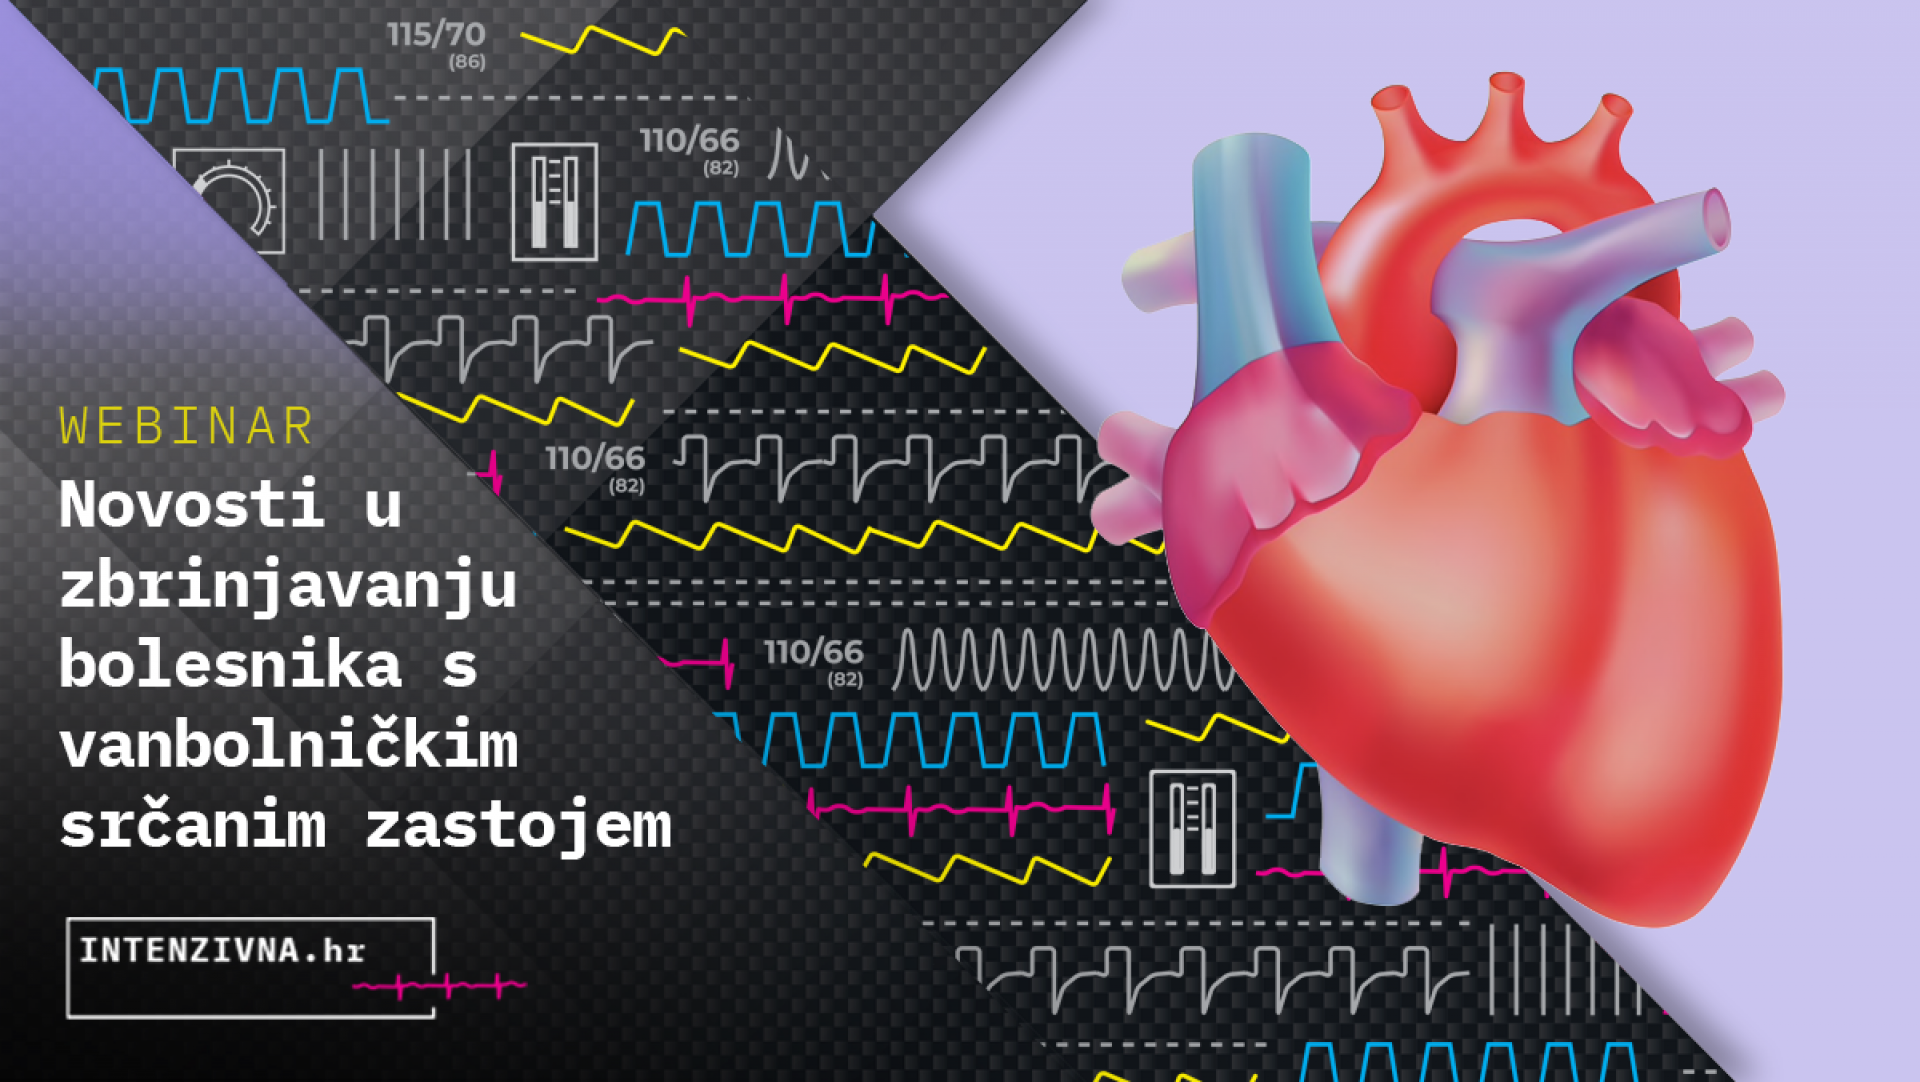 Novosti u zbrinjavanju bolesnika s vanbolničkim srčanim zastojem